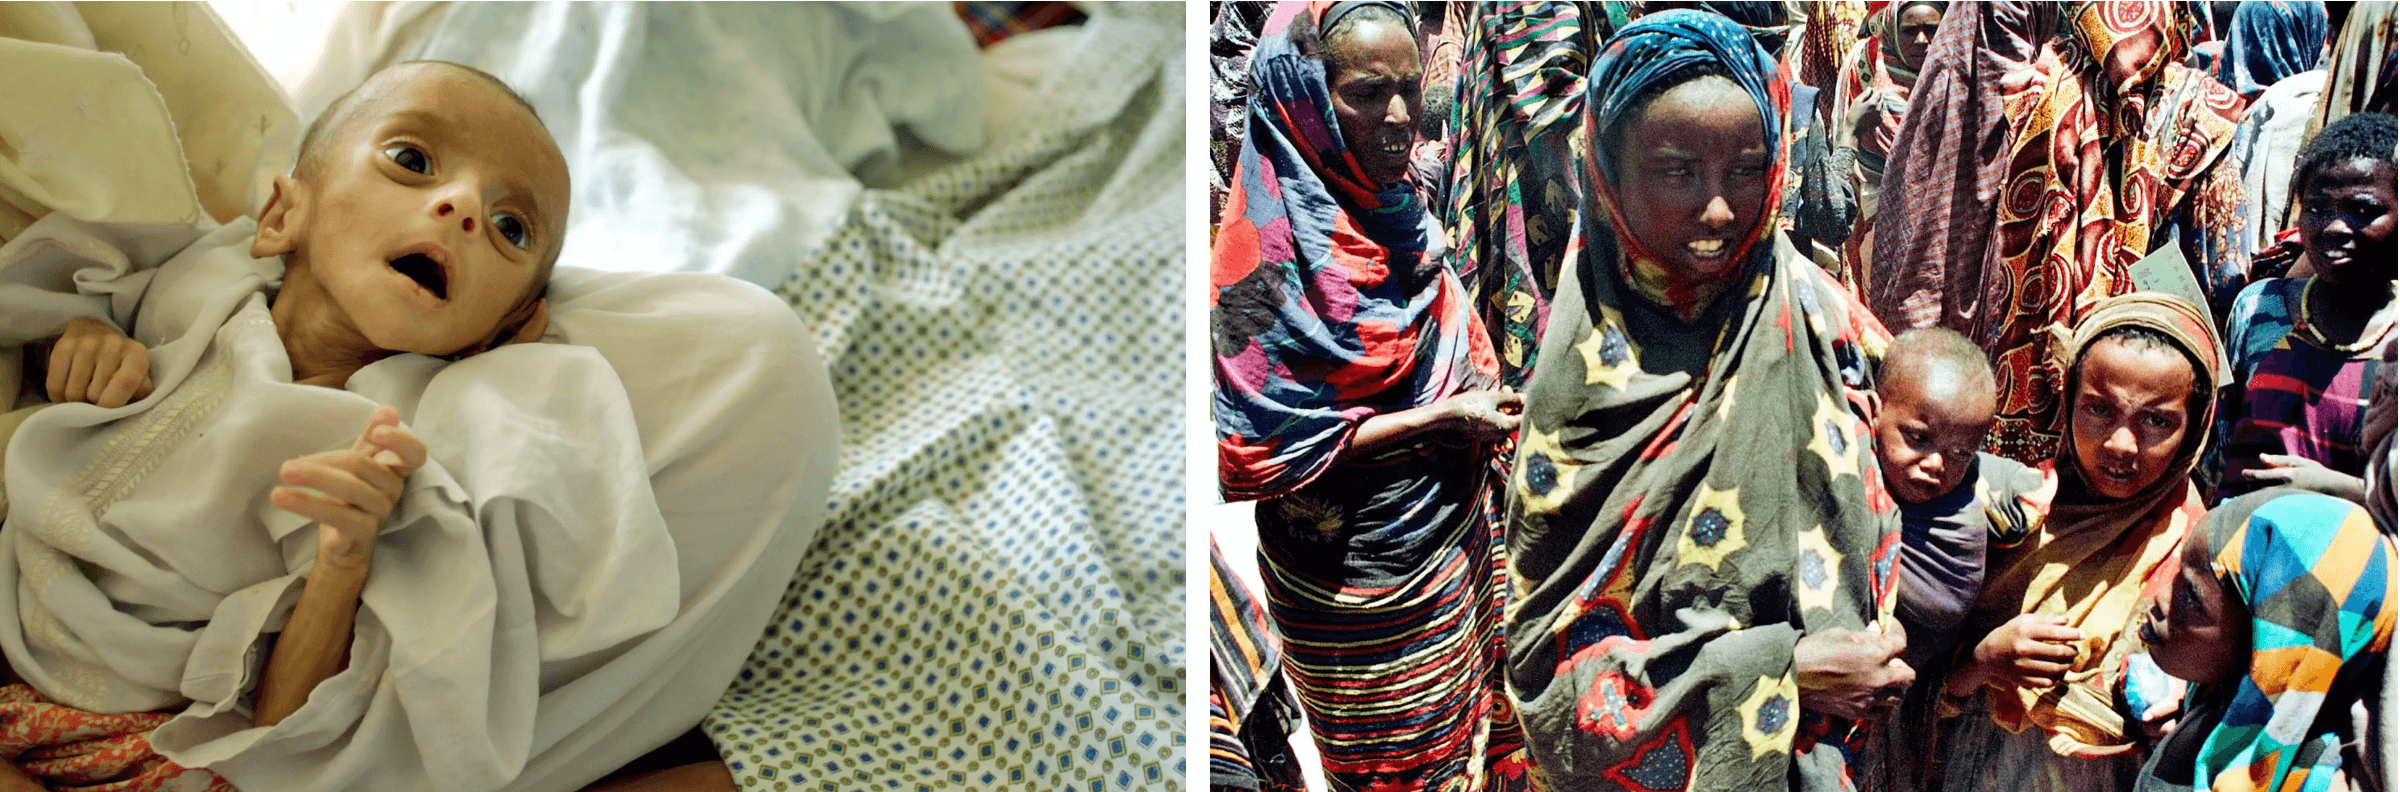 (Giữa) Suy dinh dưỡng là nguyên nhân chính khiến trẻ em tử vong vì bệnh sởi. Một em bé 4 tháng tuổi bị suy dinh dưỡng nặng nằm trên giường bệnh viện ở Kabul, Afghanistan, ngày 16/07/2002. (Ảnh: Natalie Behring-Chisholm/Getty; (Phải) Những bà mẹ và trẻ em Somali đang chờ nhận thức ăn từ trung tâm cung cấp thực phẩm của UNICEF ở Wajid, một thị trấn ở miền nam Somalia, ngày 13/04/2000. Somalia có tỷ lệ tử vong ở trẻ sơ sinh và trẻ em cao nhất thế giới vì nhiều bệnh, trong đó có bệnh sởi. (Ảnh: ALI MUSA/AFP/Getty Images)